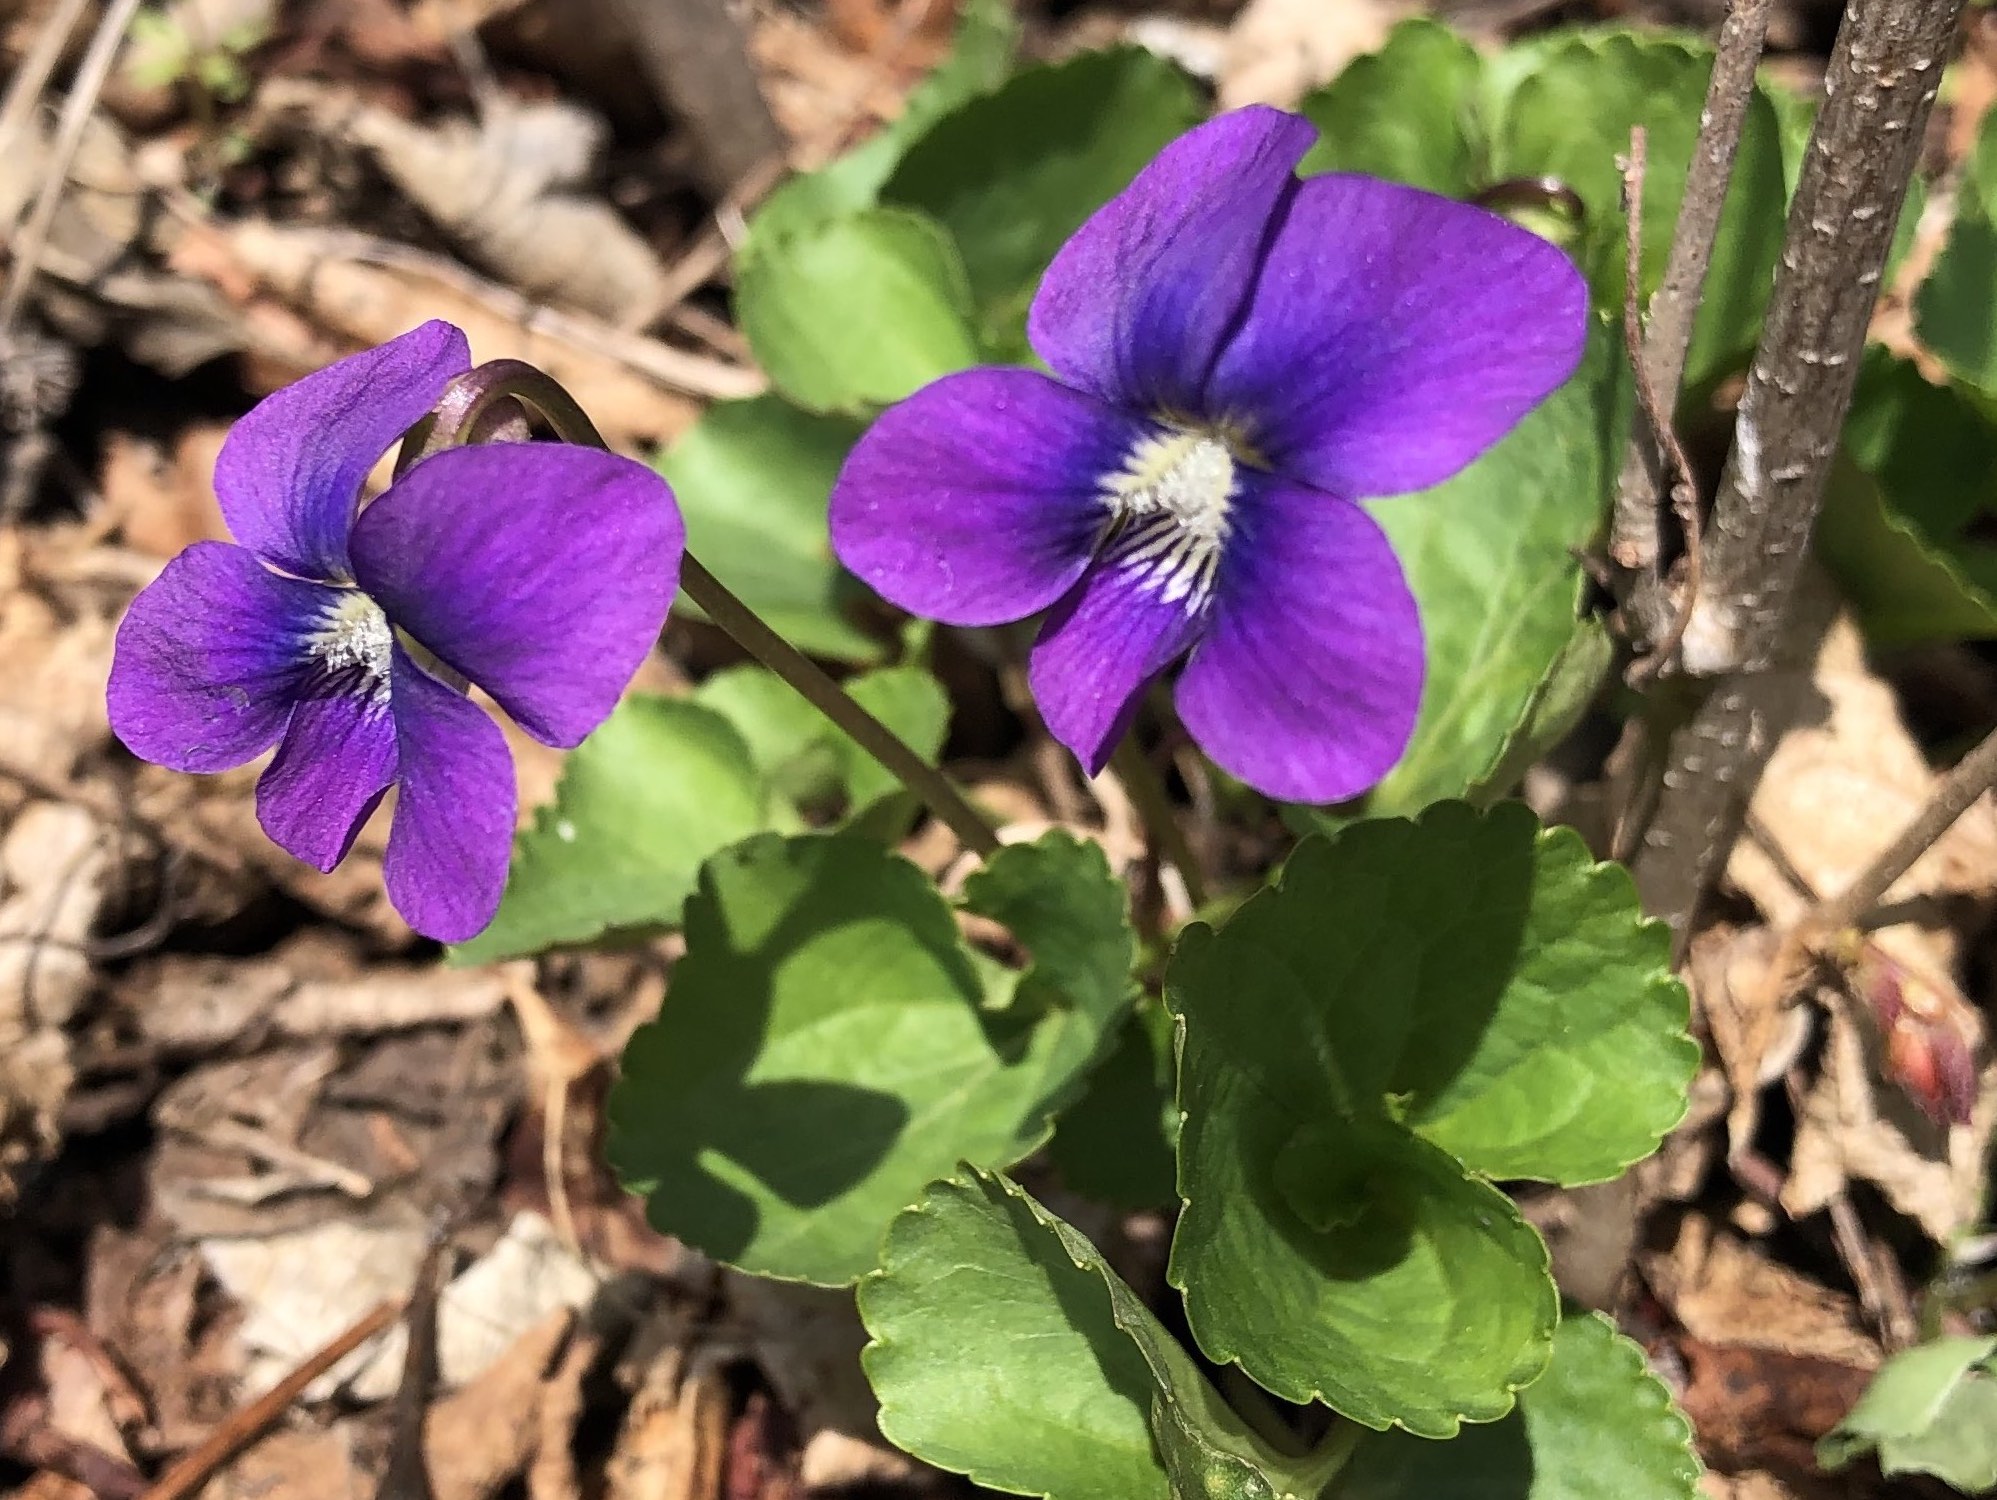 Violet in UW Arborteum Native Garden in Madison, Wisconsin on April 17, 2021.